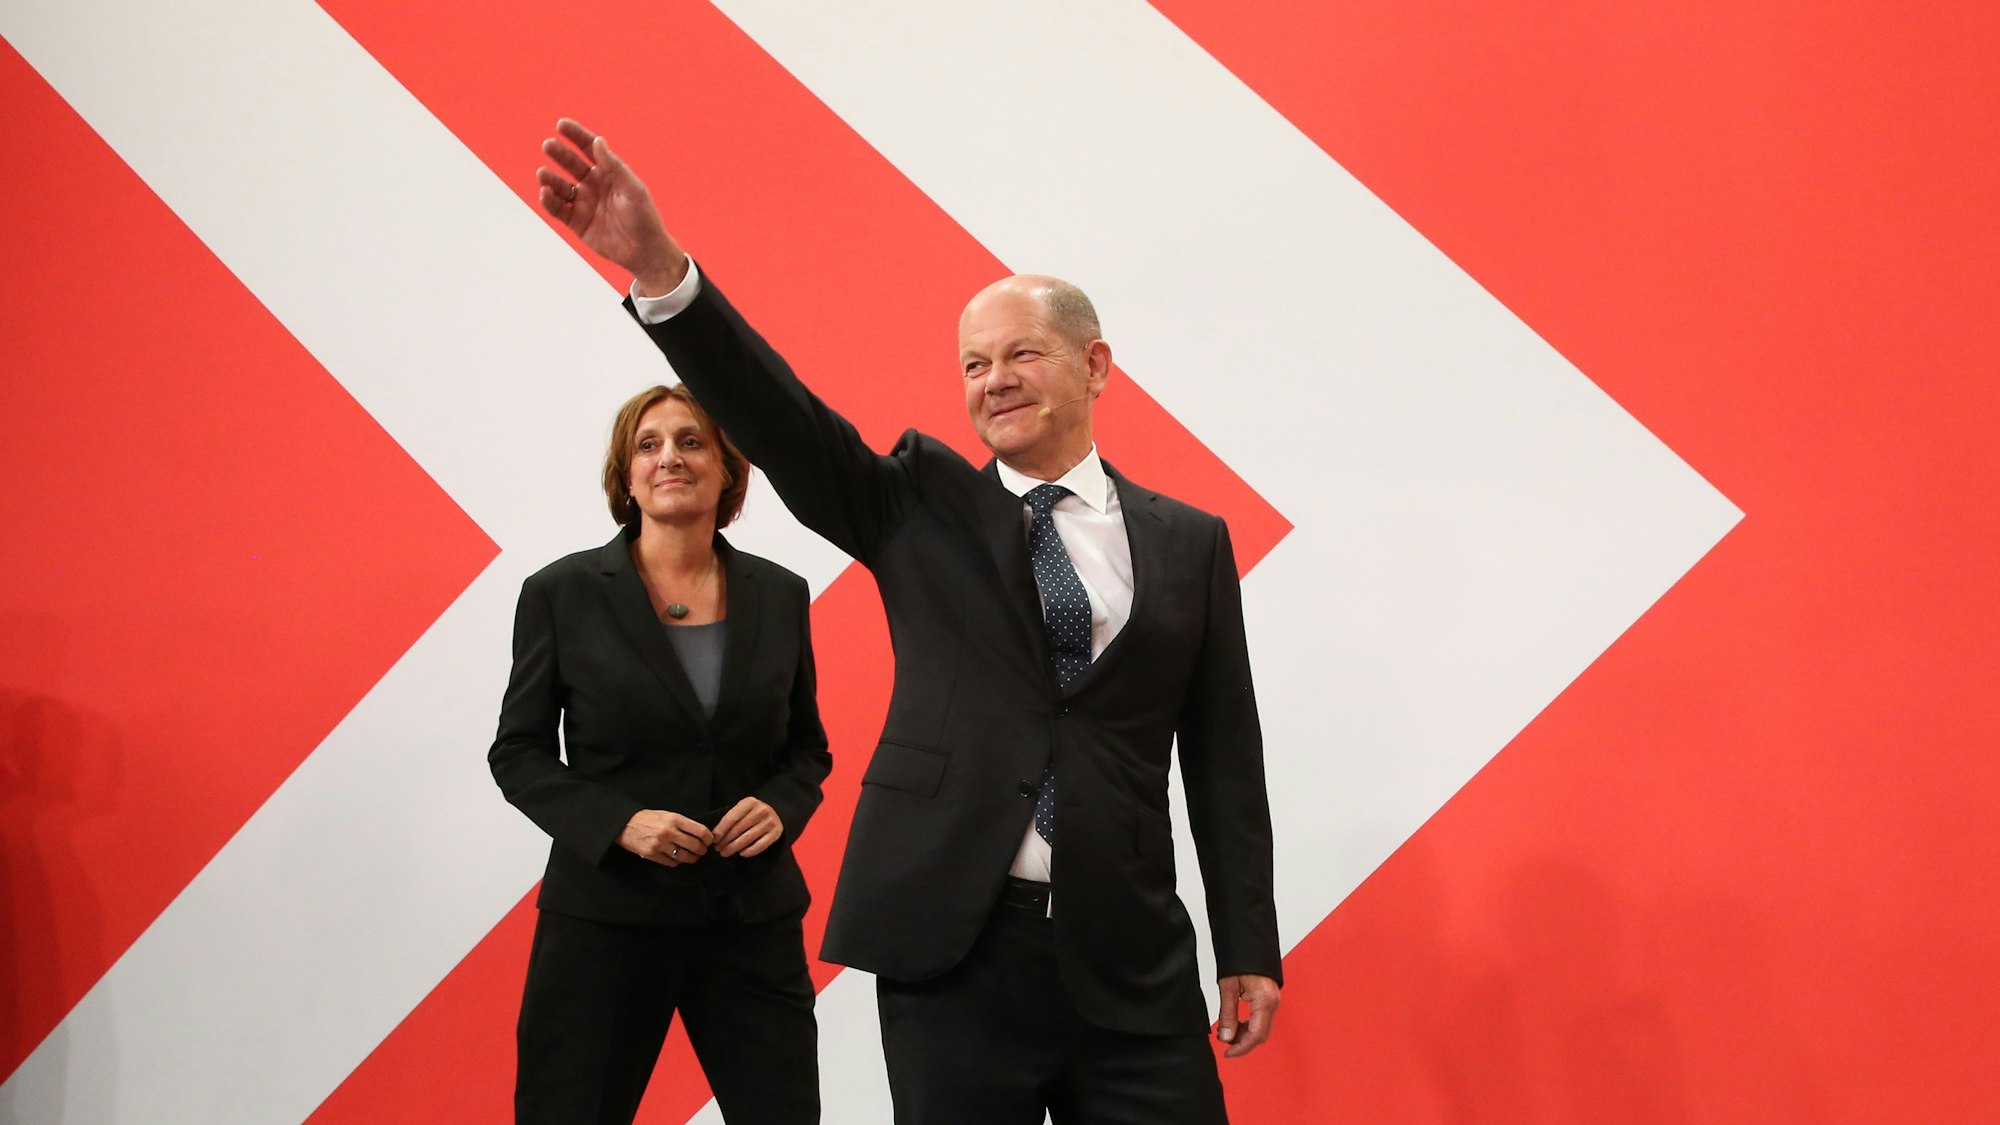 Olaf Scholz, damals noch Finanzminister und SPD-Kanzlerkandidat, winkt im September neben seiner Frau Britta Ernst während der Wahlparty im Willy-Brandt-Haus.